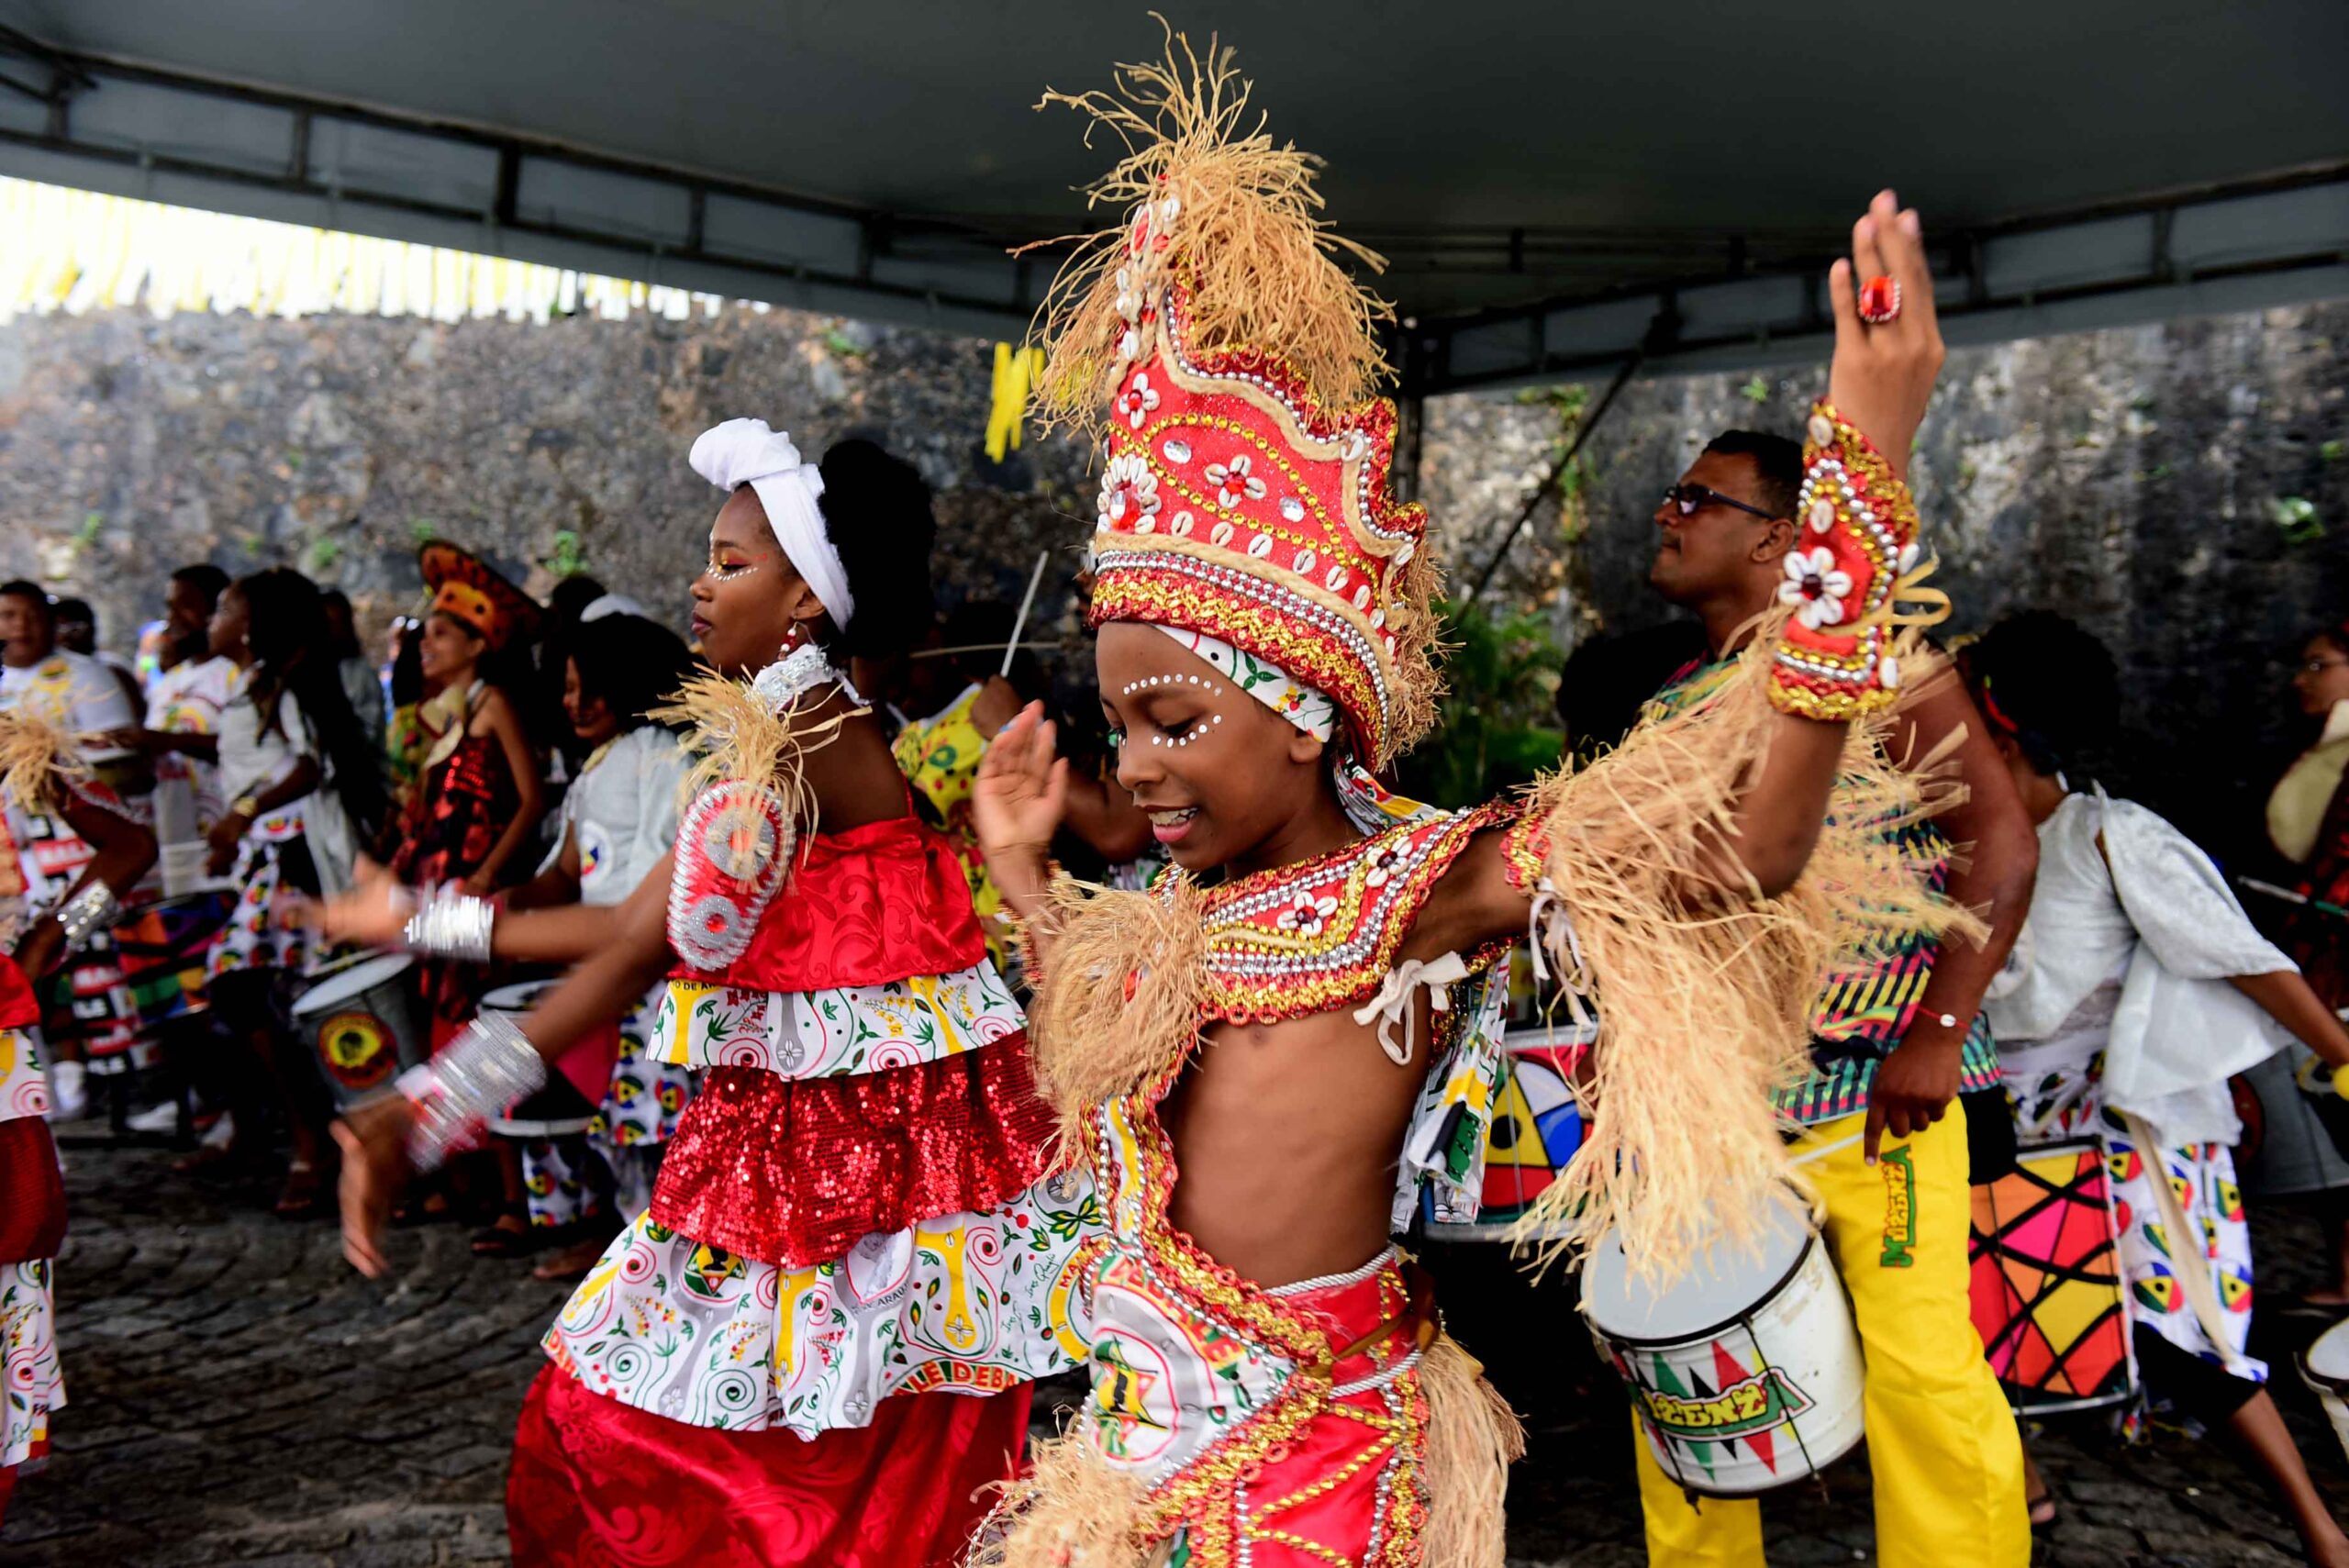 Centro de Salvador terá desfiles de blocos afro e grupos de samba no último fim de semana de novembro